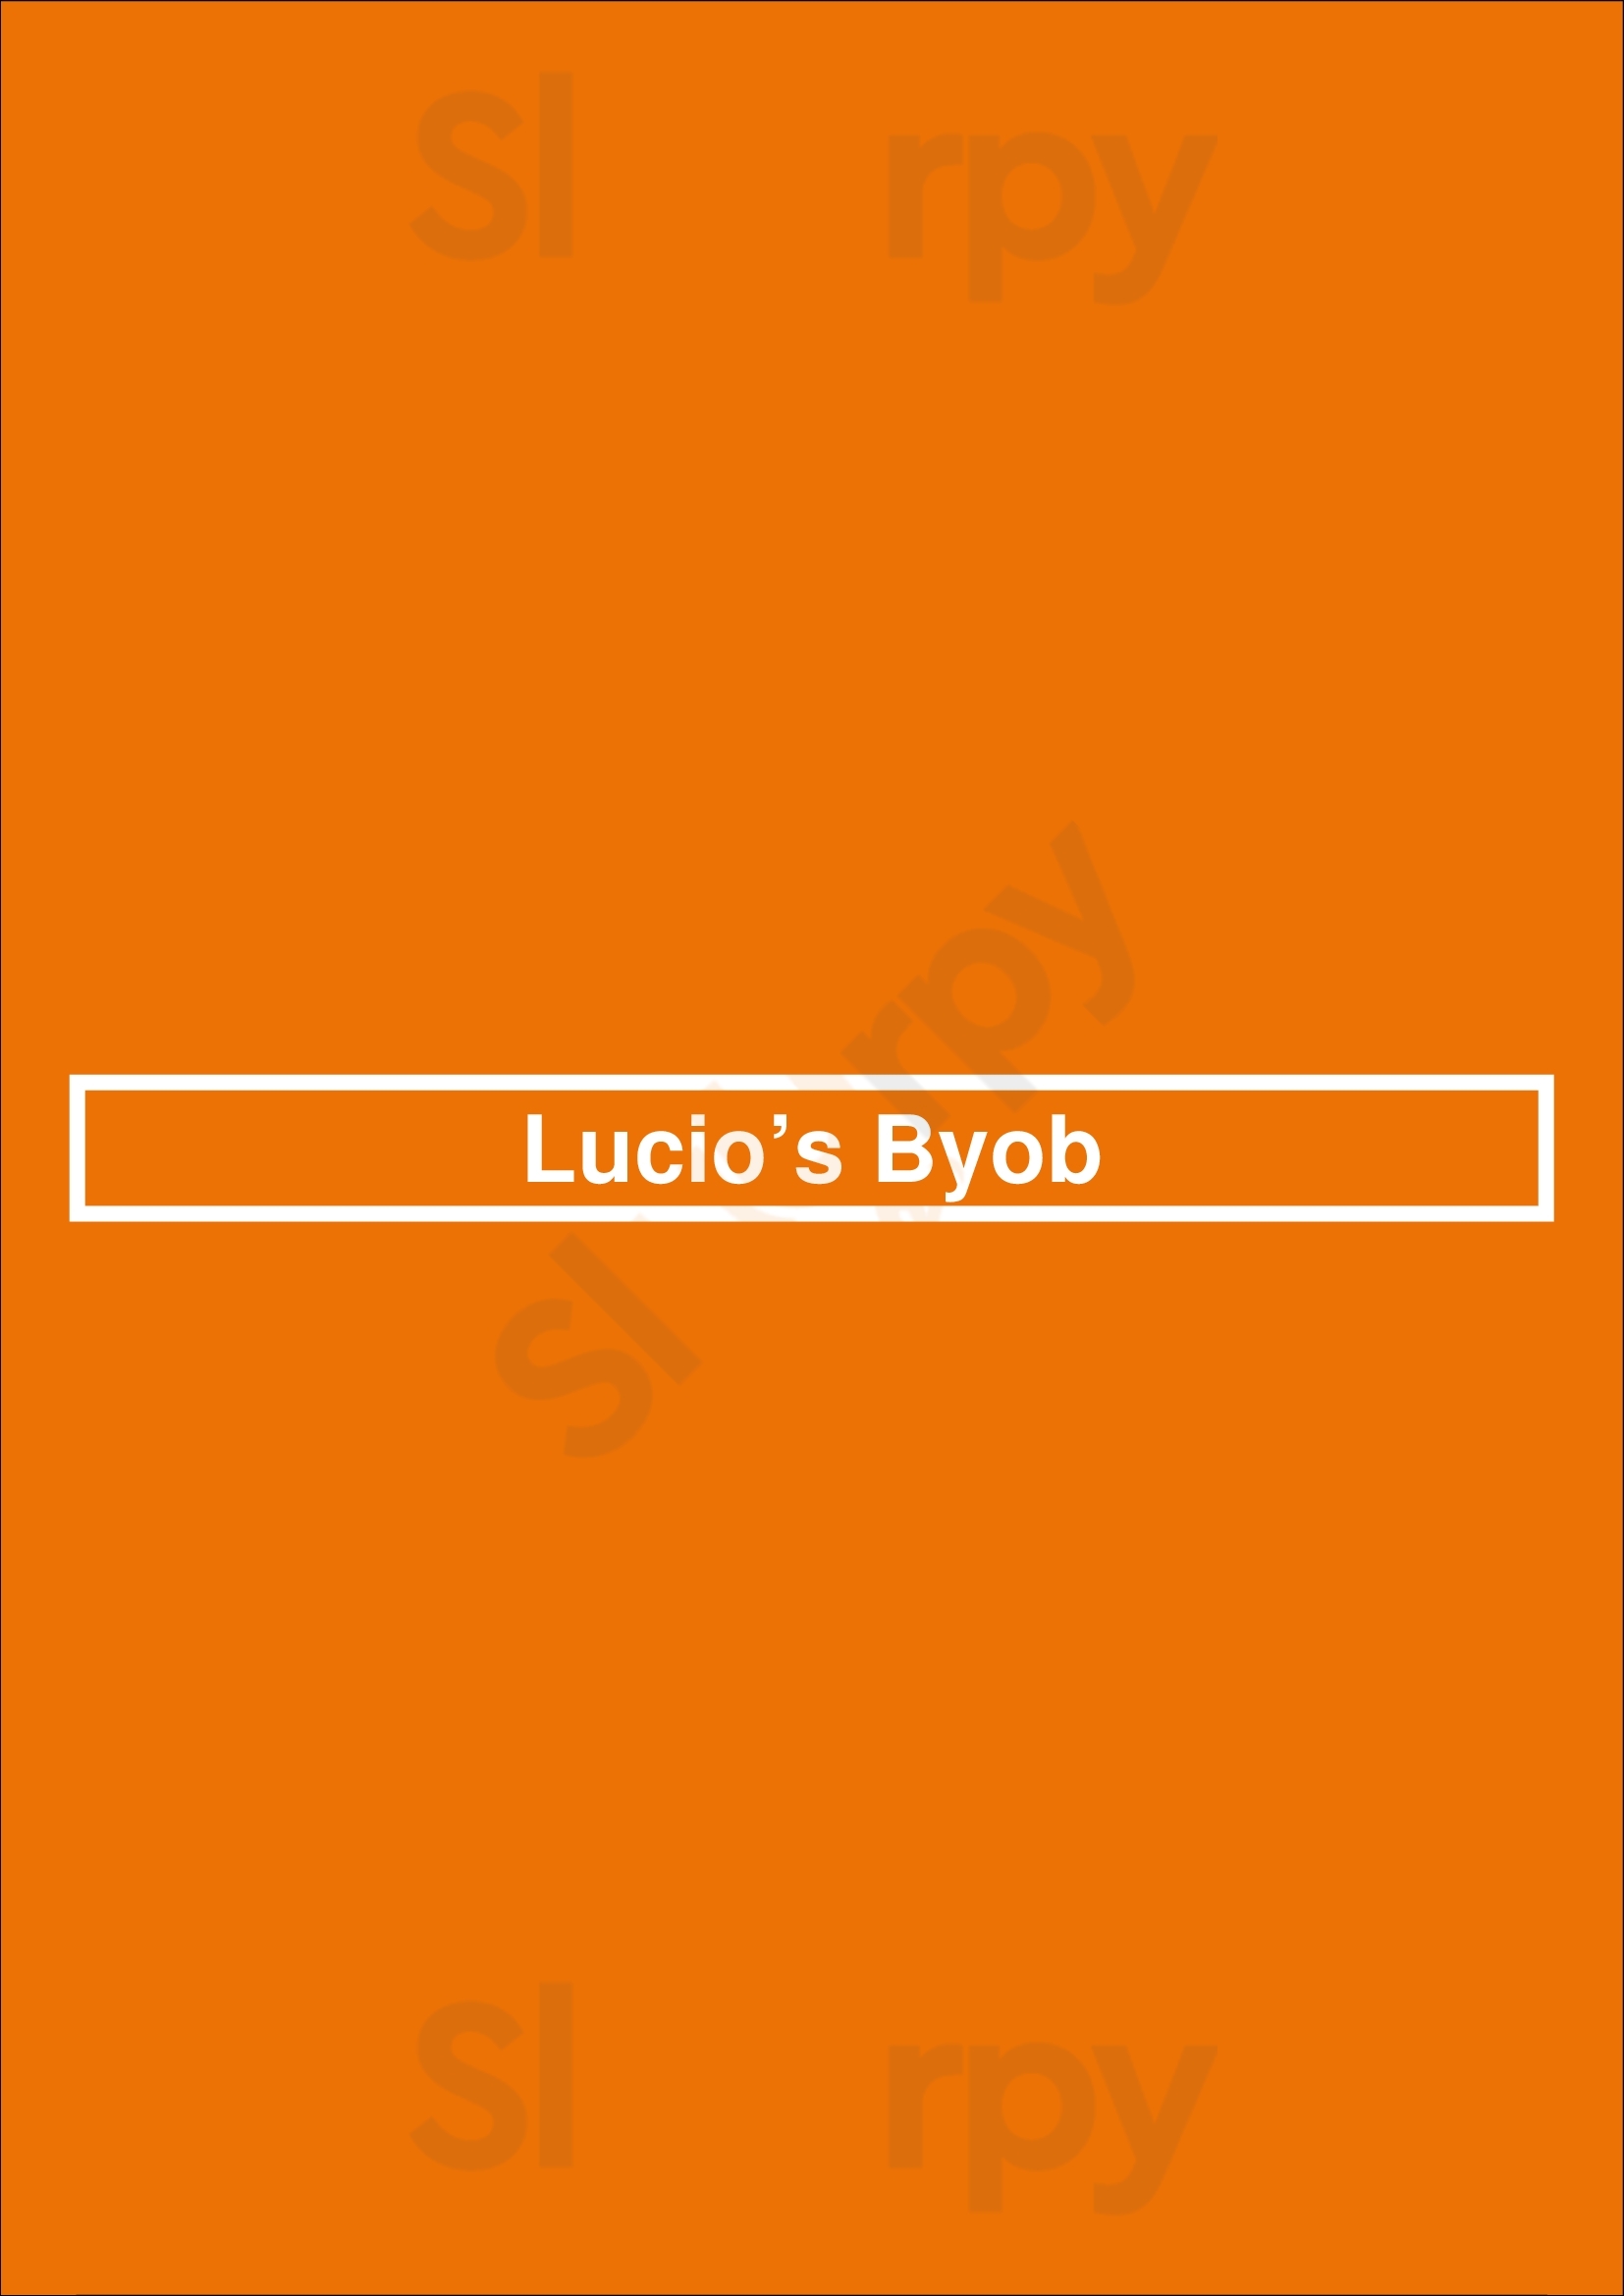 Lucio’s Byob Houston Menu - 1